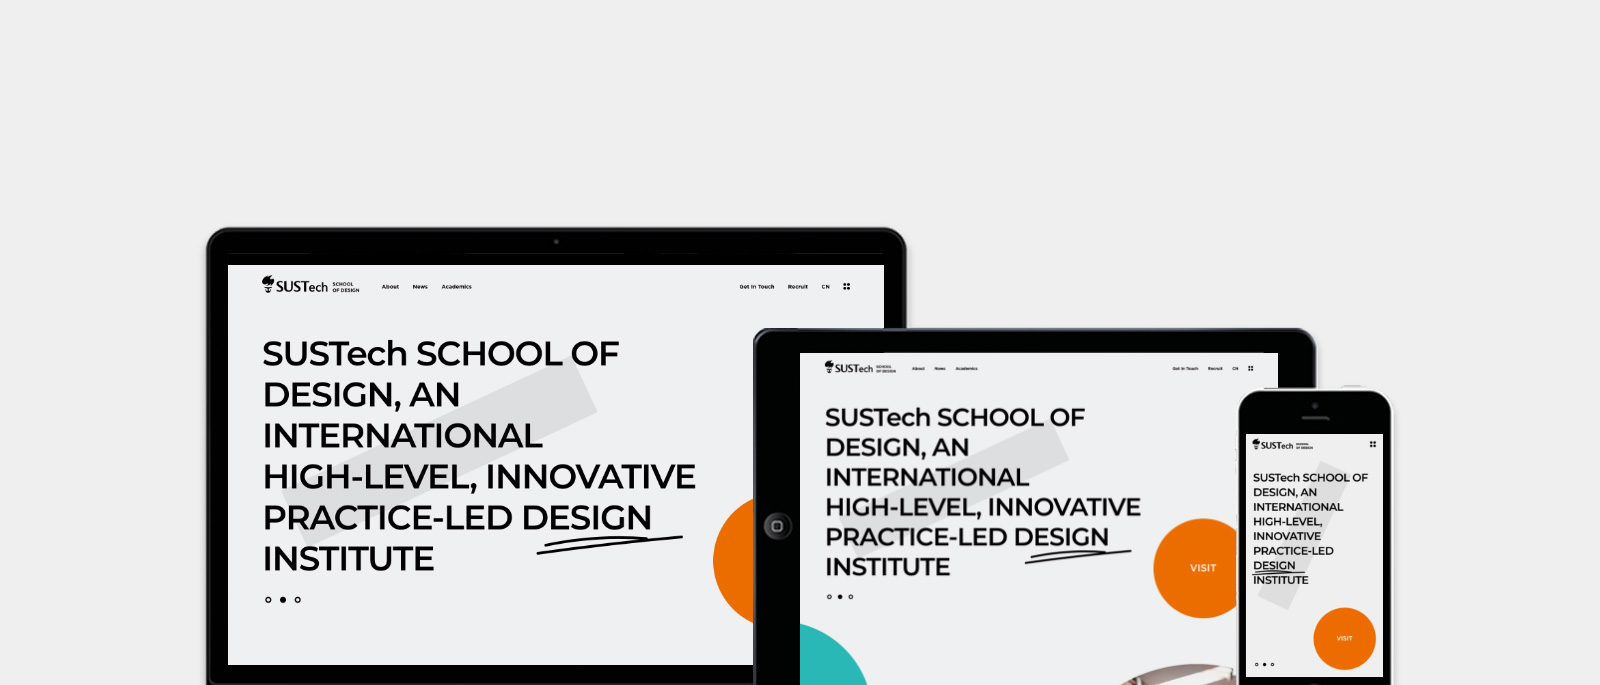 深圳某高校创意设计学院官网网站0-素马设计作品